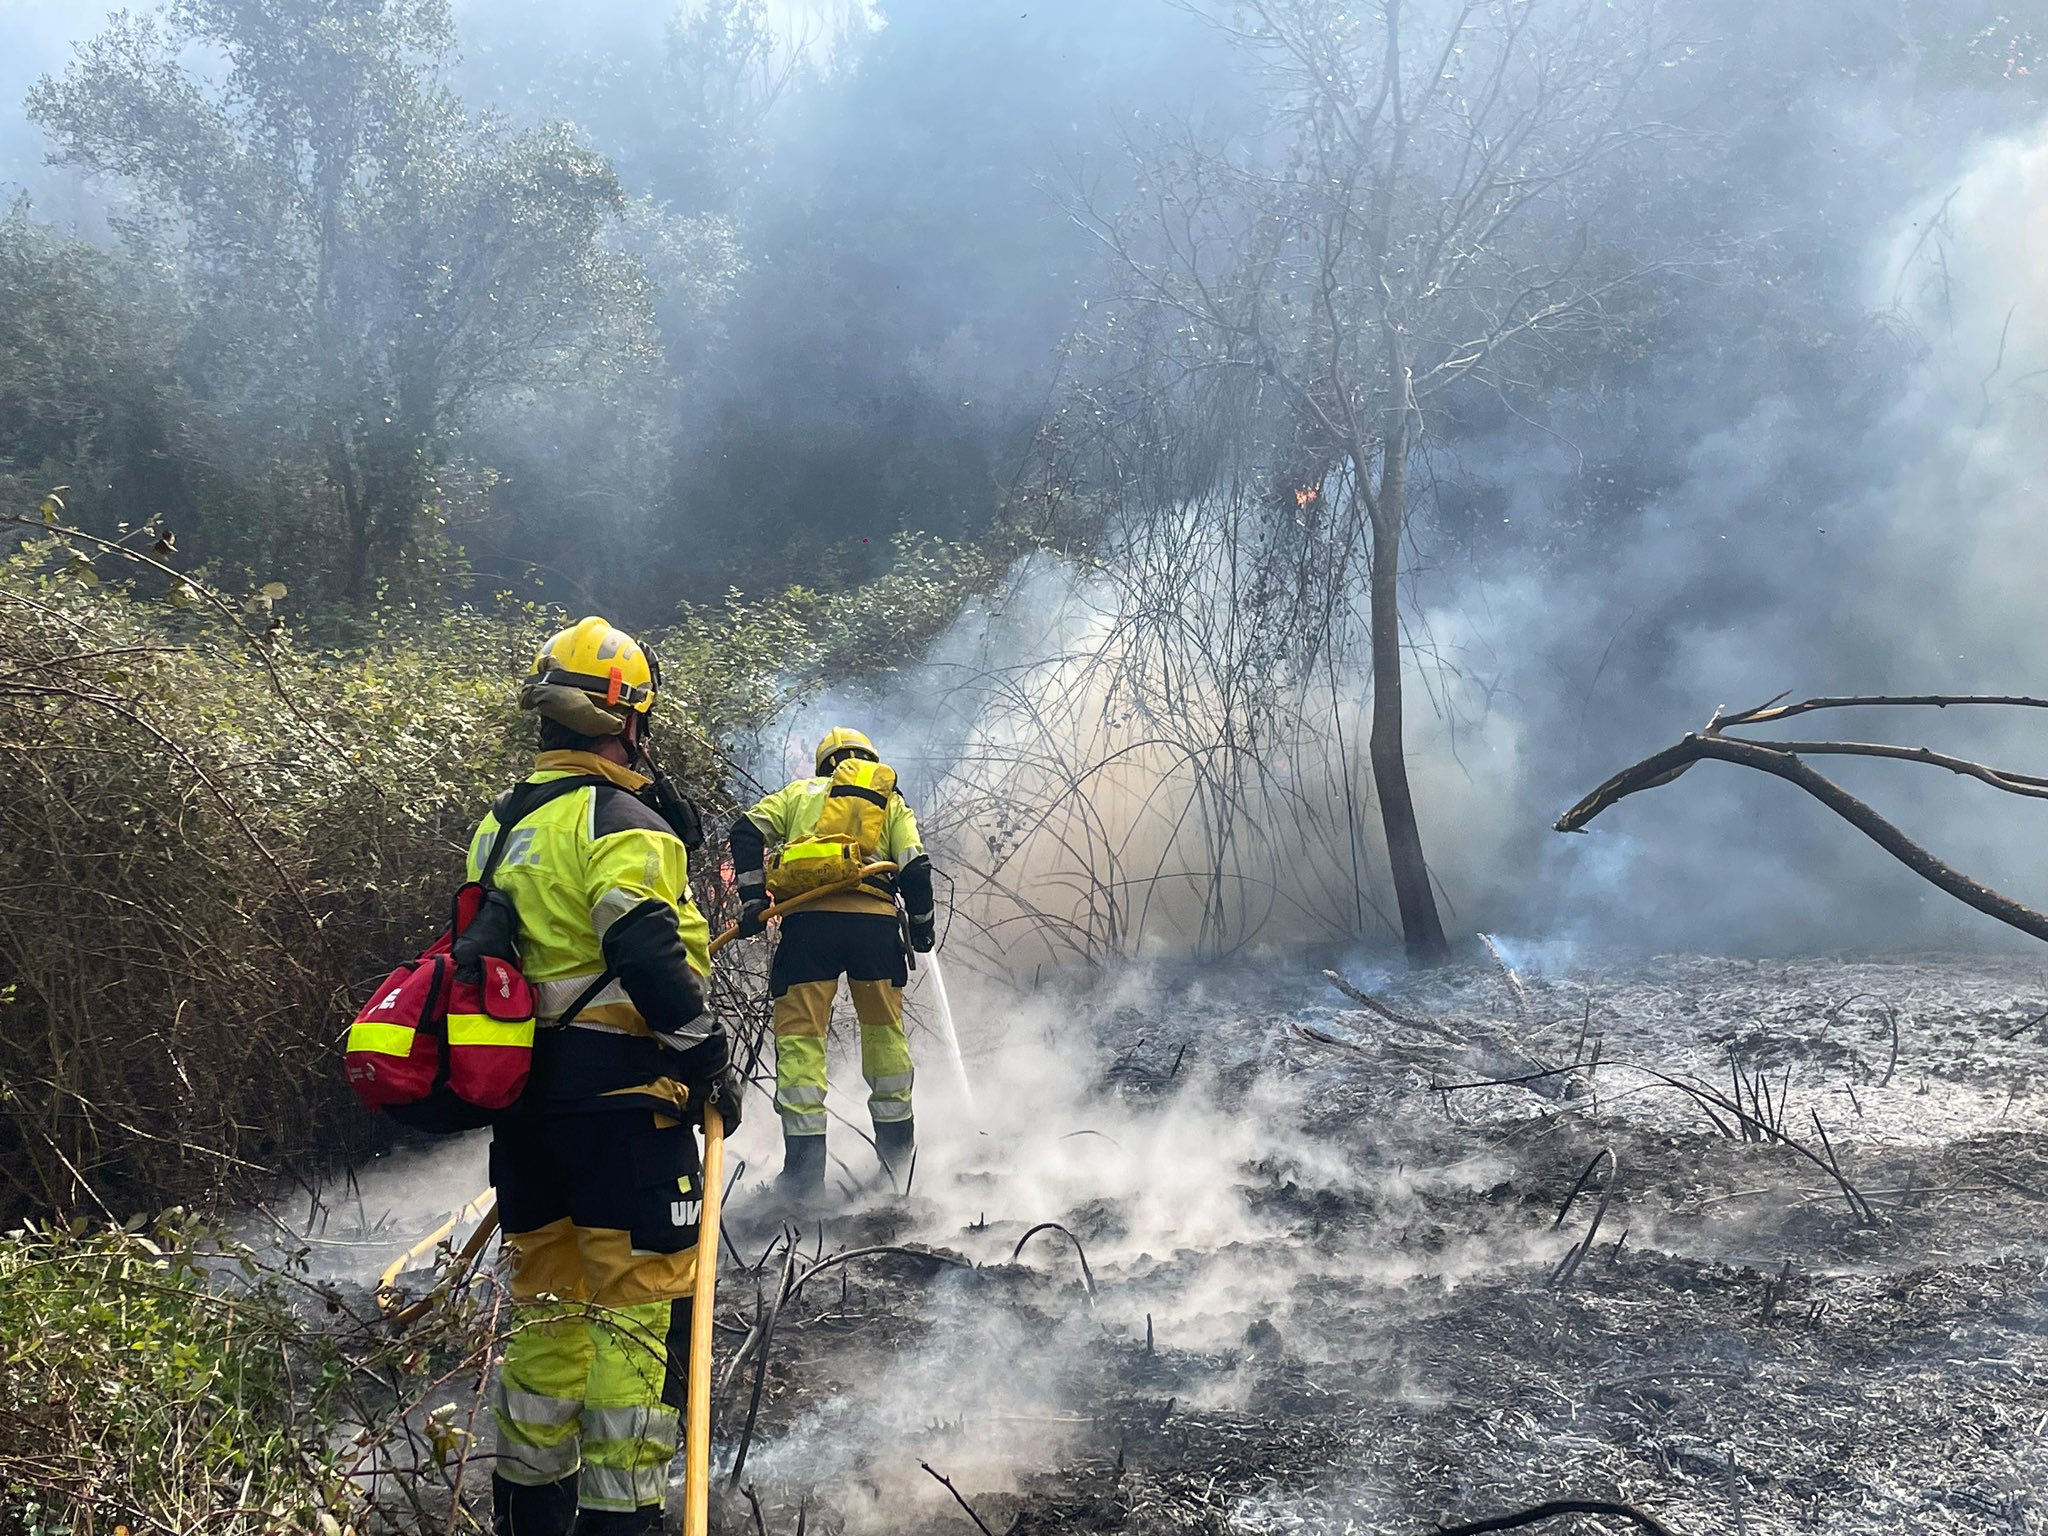 Bomberos apagando el incendio propagado en la zona forestal del río Albaida